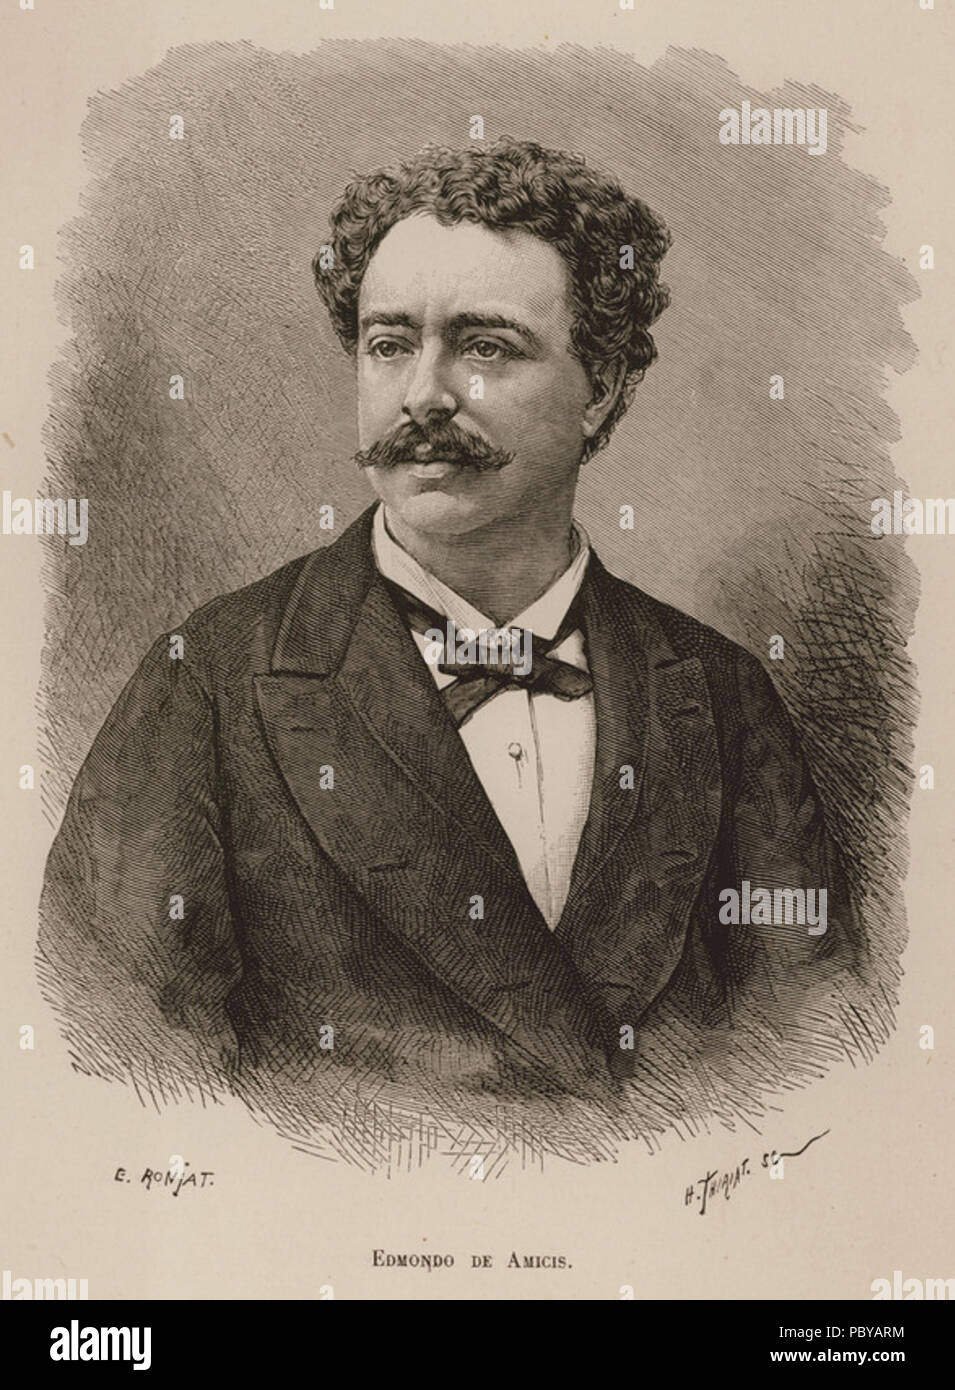 177 Edmondo de Amicis - De Amicis Edmondo - 1883 Stock Photo